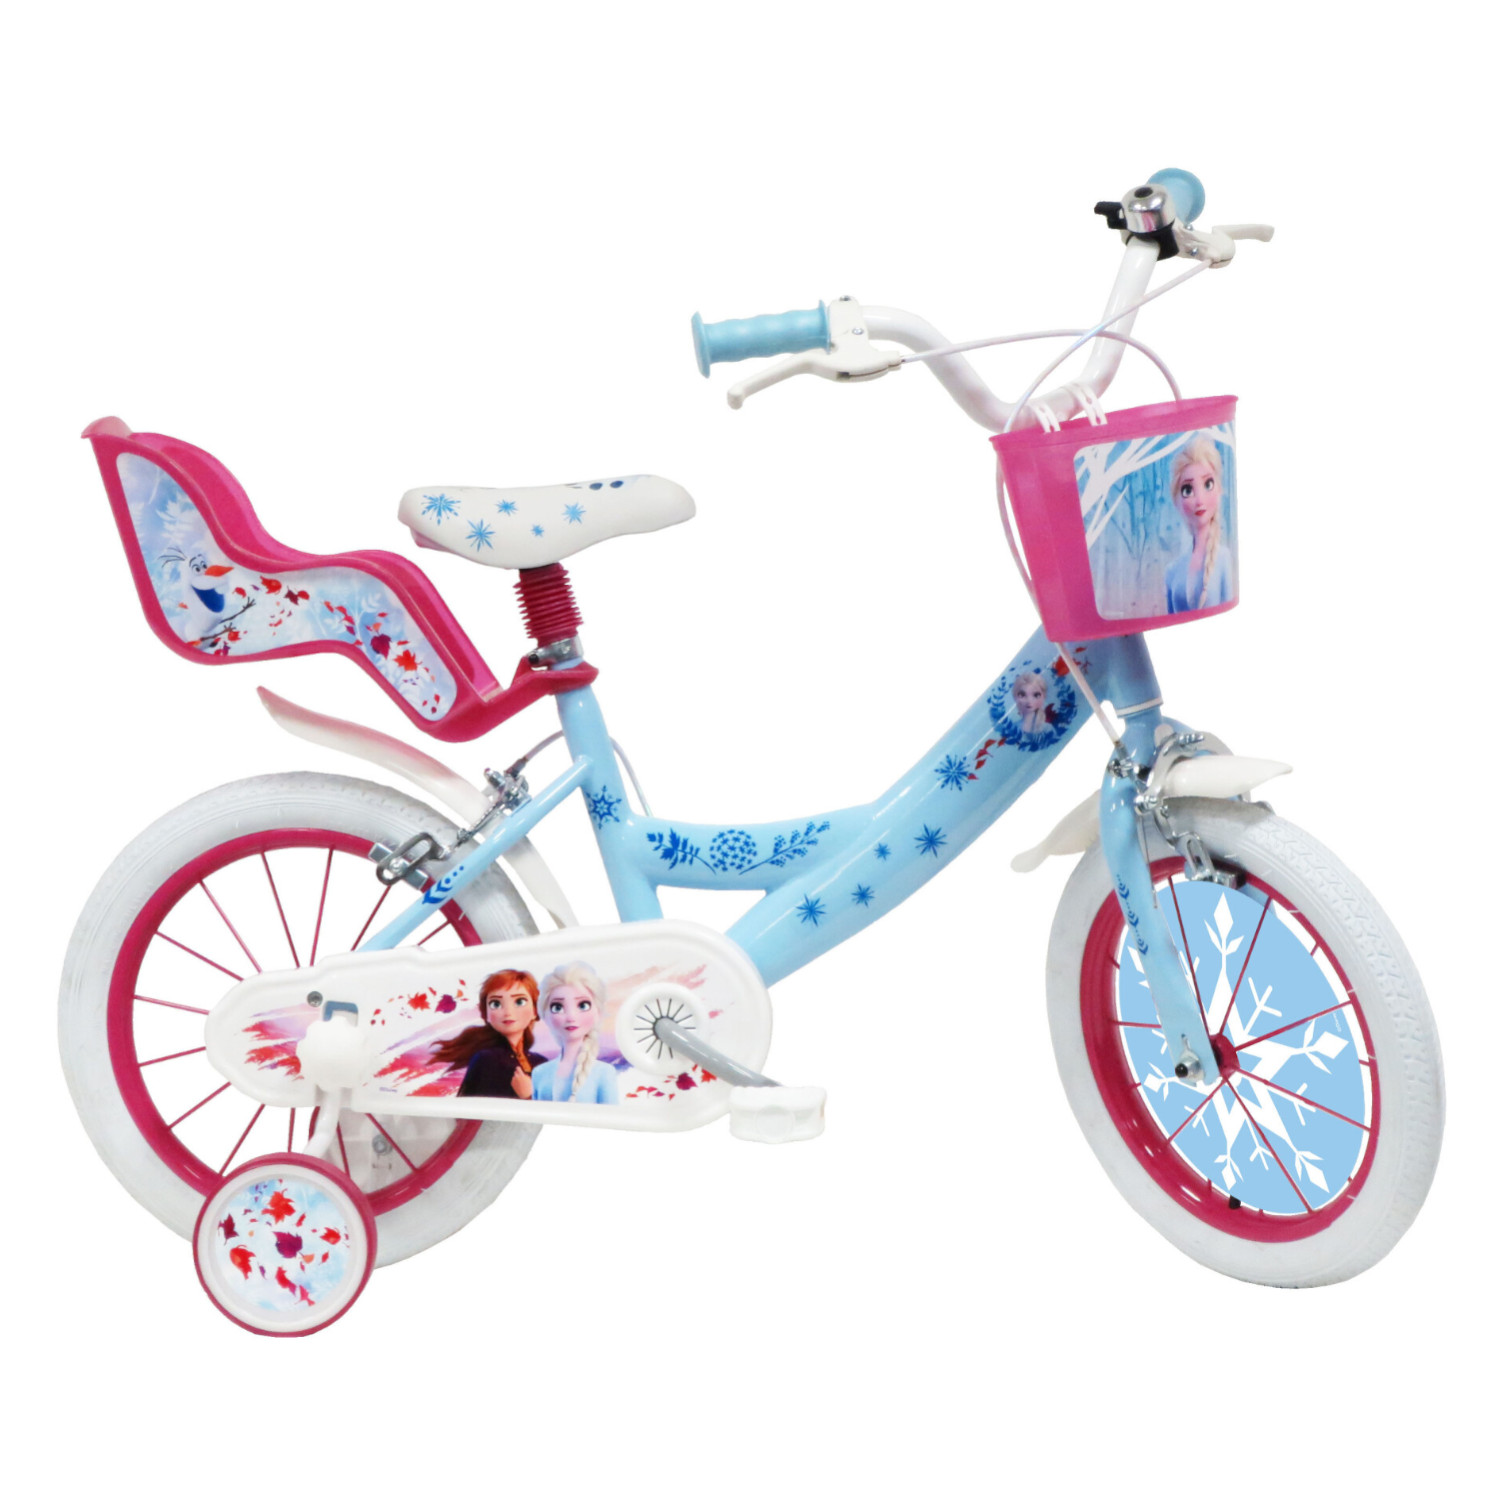 Bicicletta misura da 16 pollici disney frozen con cestino e portabambole - adatta per bambini 4-6 anni - DISNEY PRINCESS, Frozen